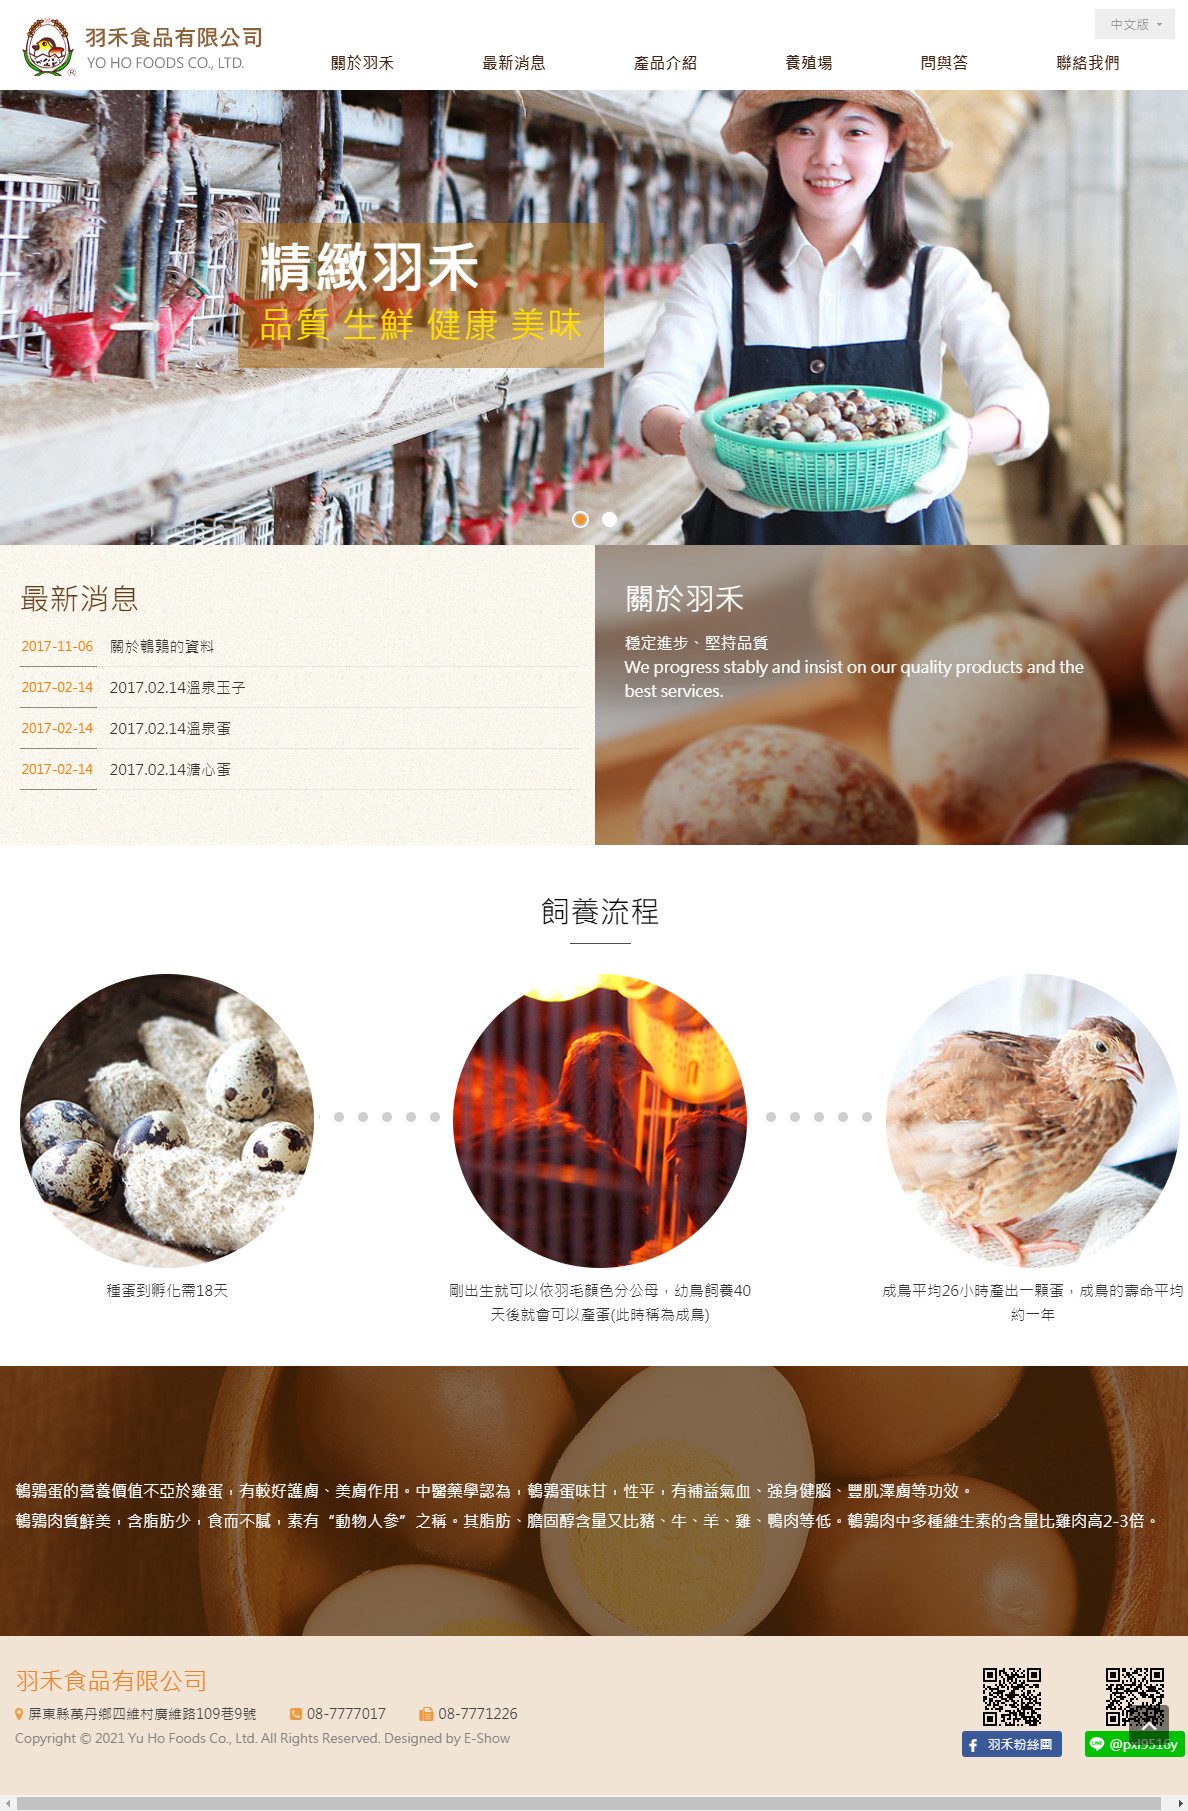 羽禾食品有限公司 客製化網站設計
網站設計